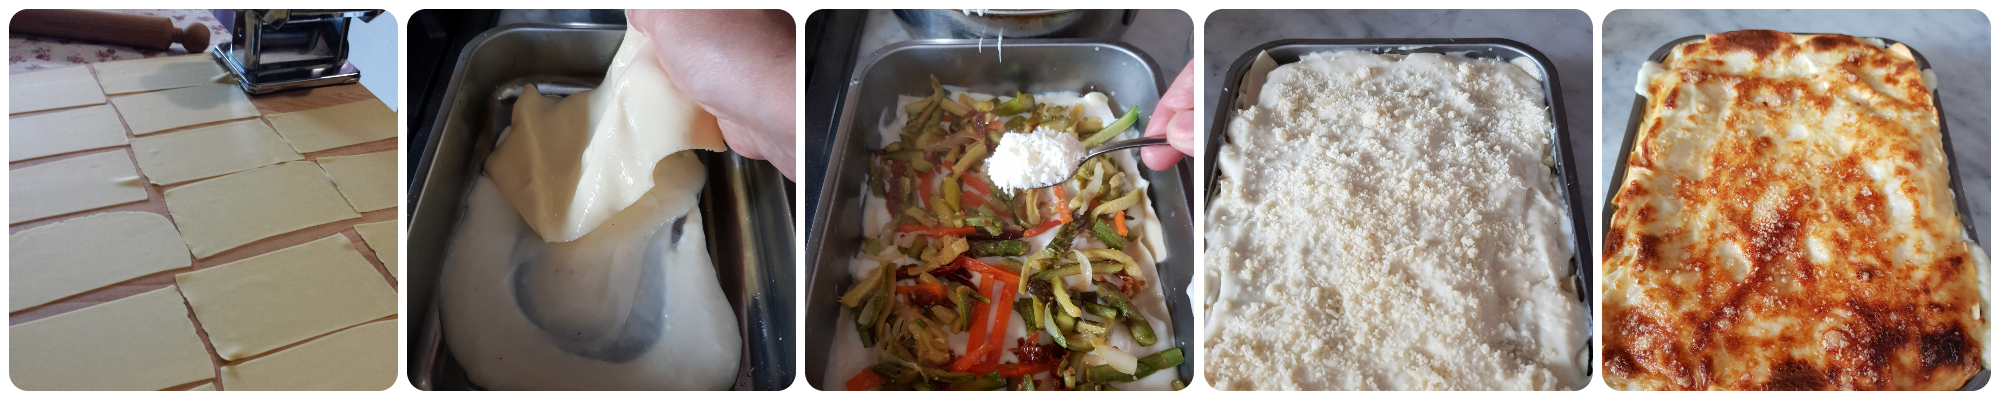 lasagne al forno con verdure